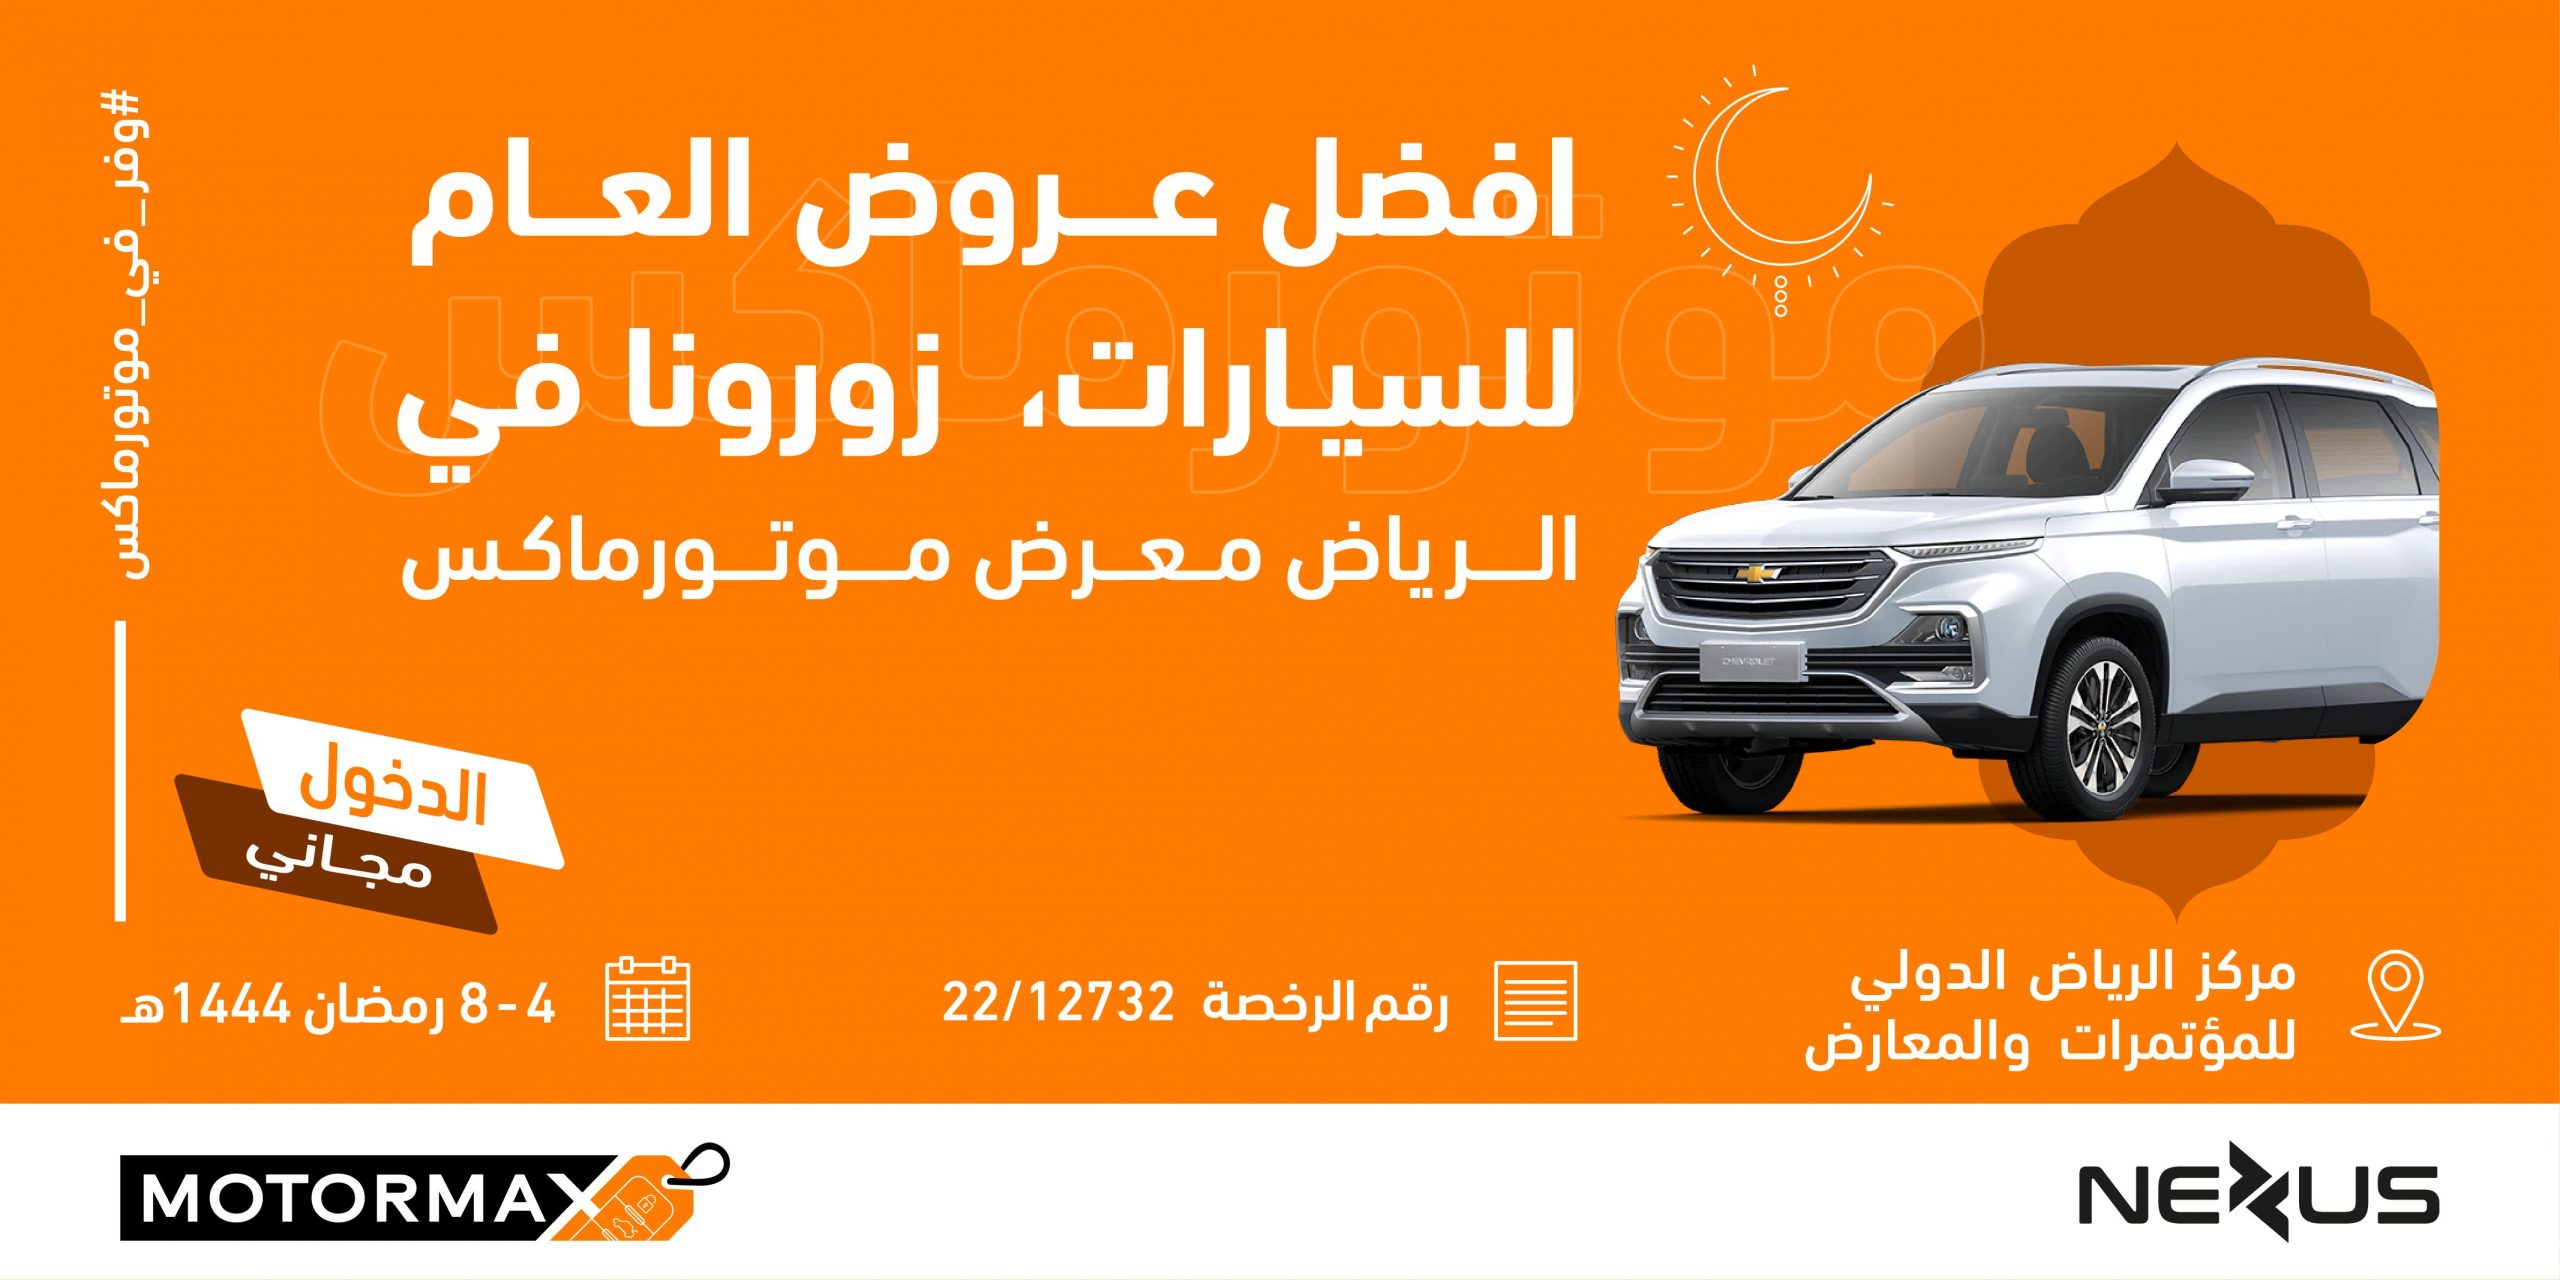 معرض رمضان الاستهلاكي للسيارات "موتورماكس" يستقبل زواره خلال شهر رمضان المبارك في مركز الرياض الدولي للمؤتمرات والمعارض 25